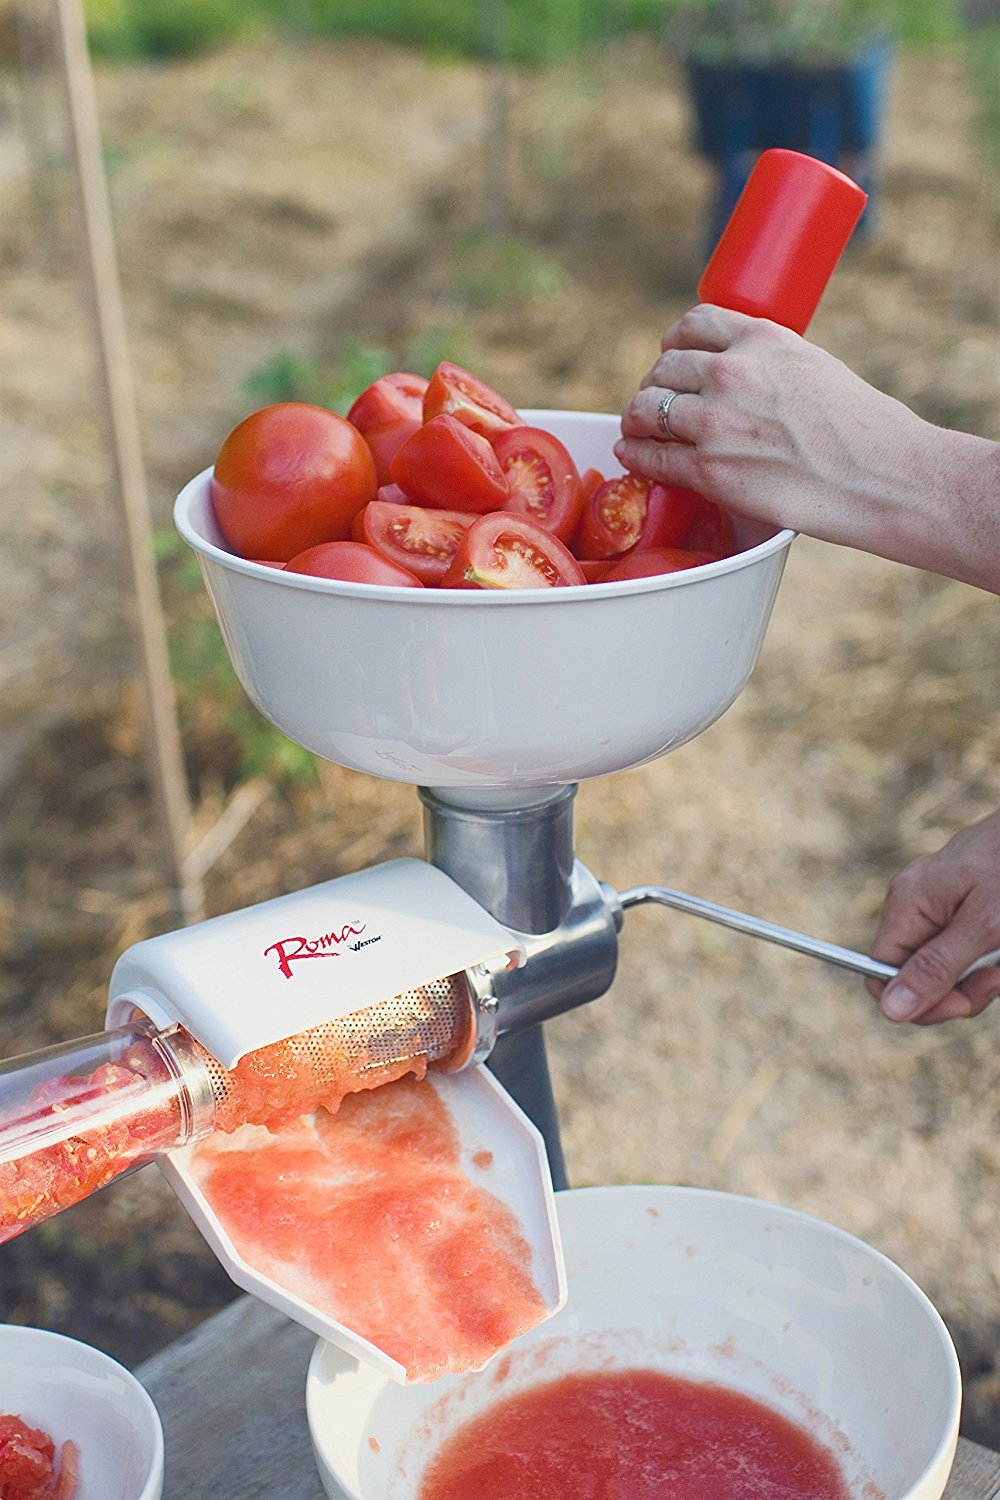 Authentic Tomato Sauce Appliances : tomato press